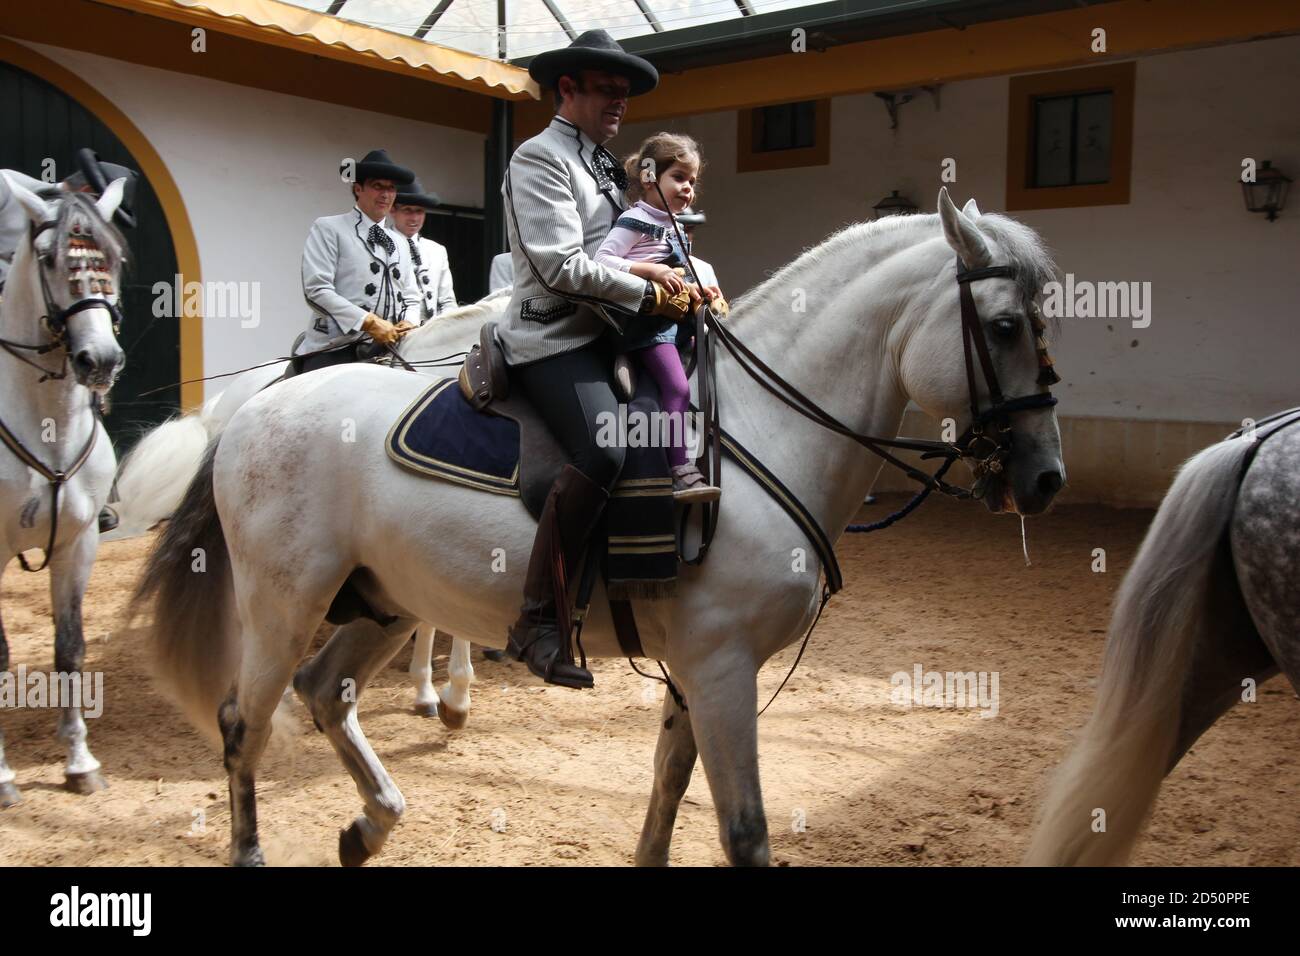 Royal Andalusian School of Equestrian Art (Real Escuela Andaluza del Arte Equestre), Jerez de la Frontera, Andalusia, Spain Stock Photo